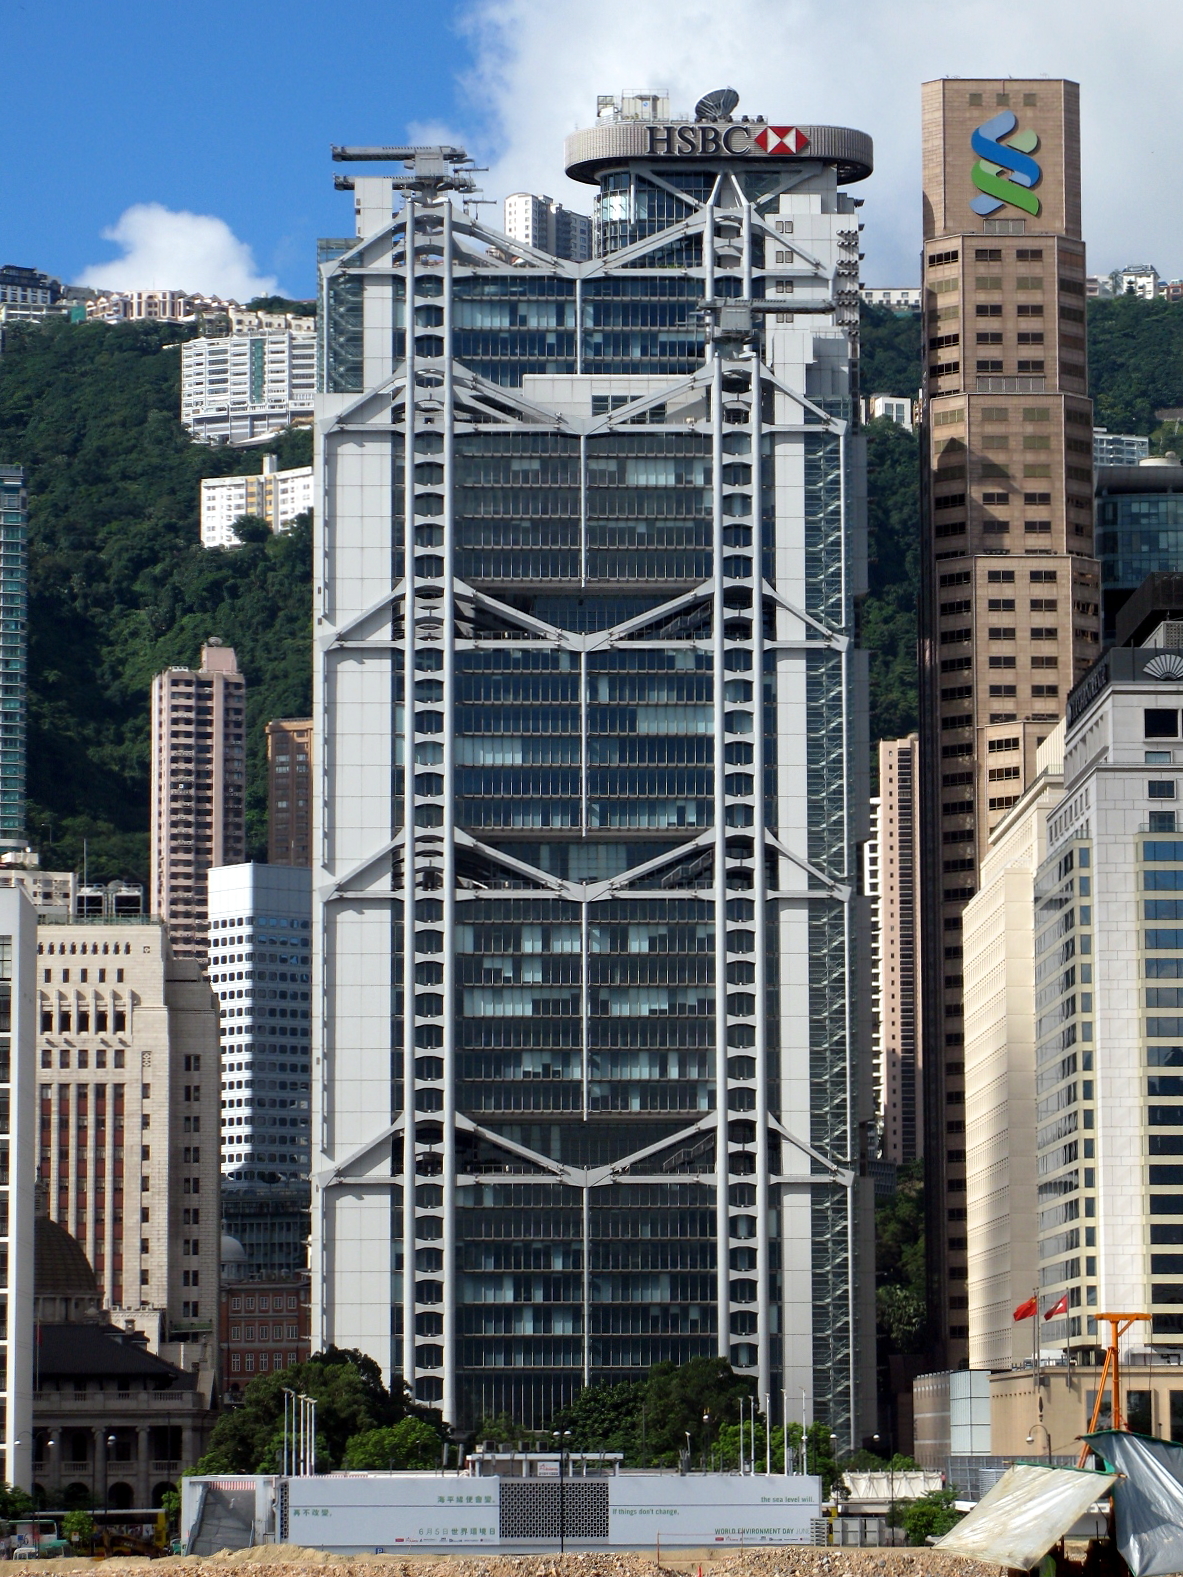 المكتب الرئيسي للمجموعة في هونگ كونگ.